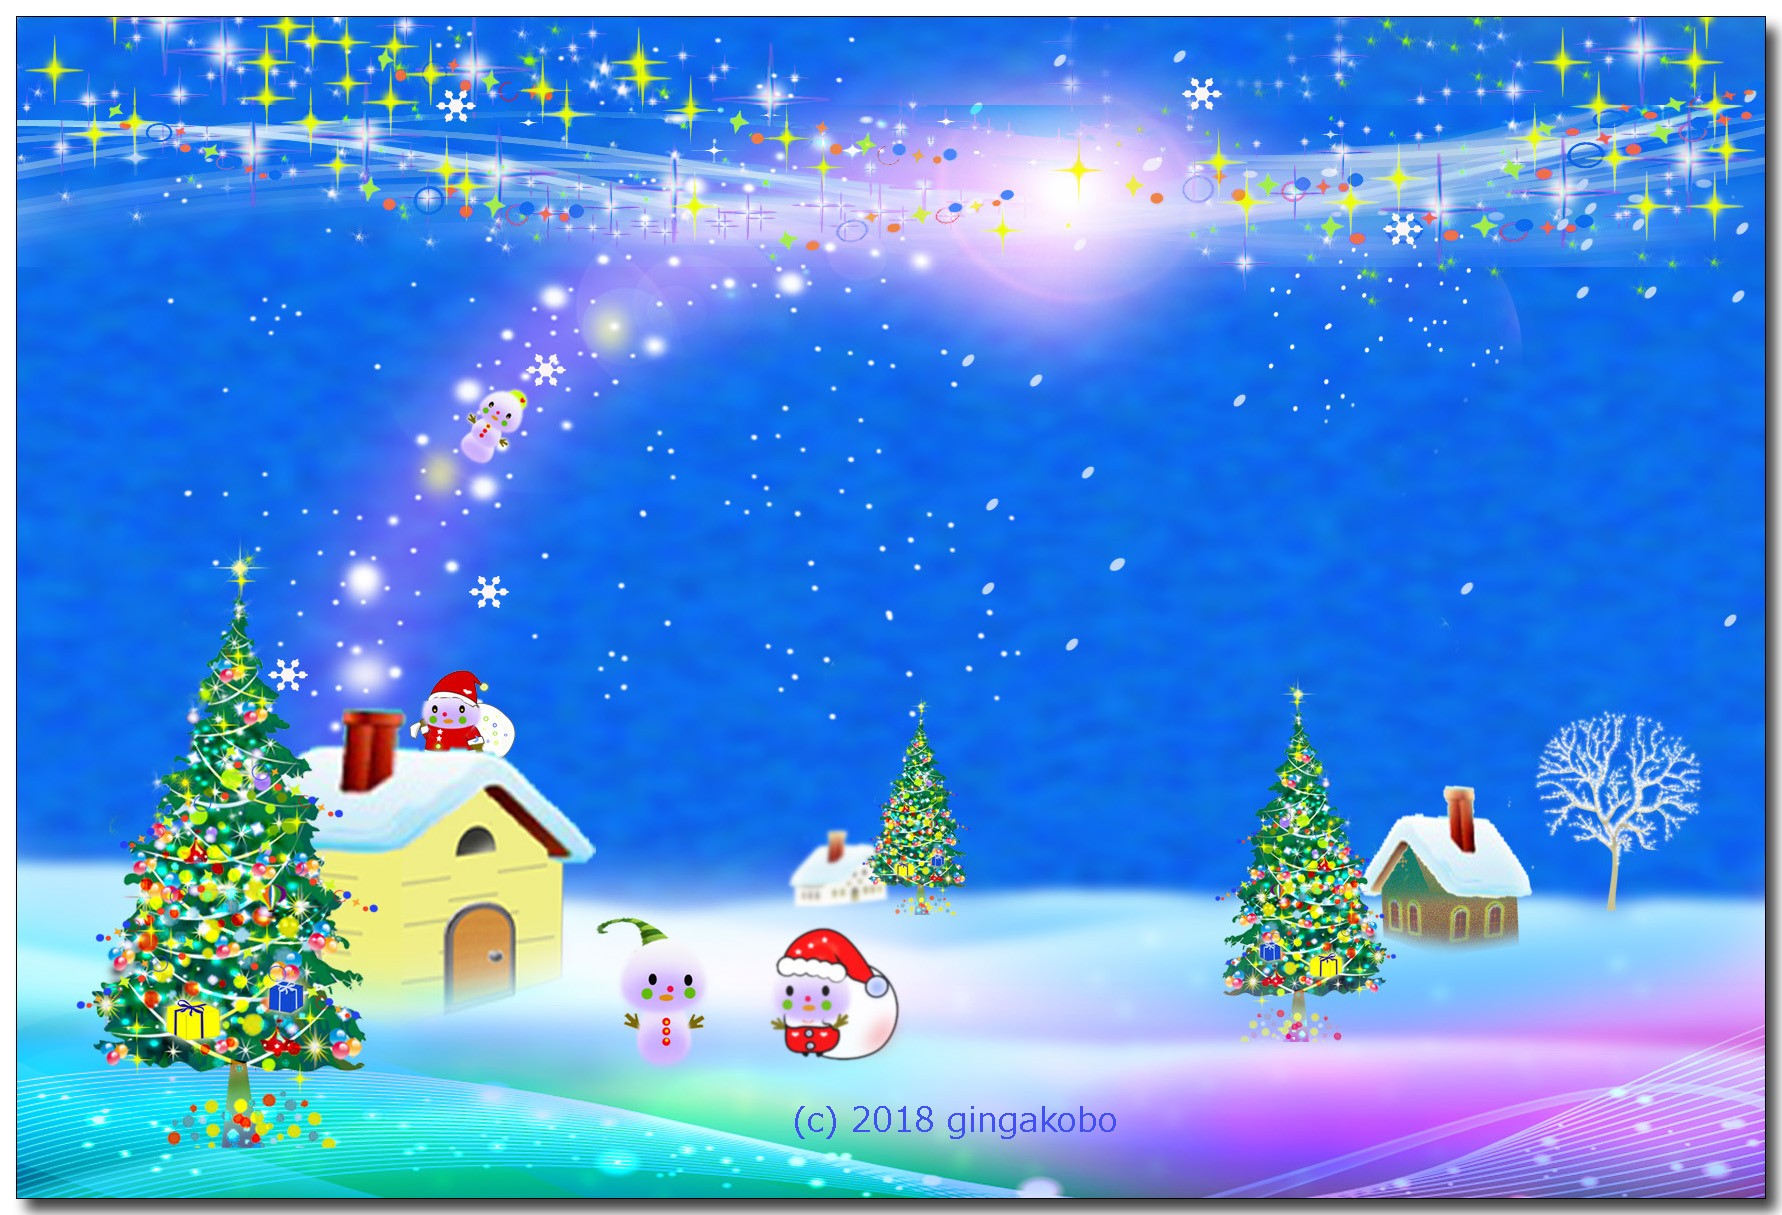 雪だるまサンタがやってきたクリスマス ほっこり癒しのイラストポストカード2枚組no 649 Iichi ハンドメイド クラフト作品 手仕事品の通販